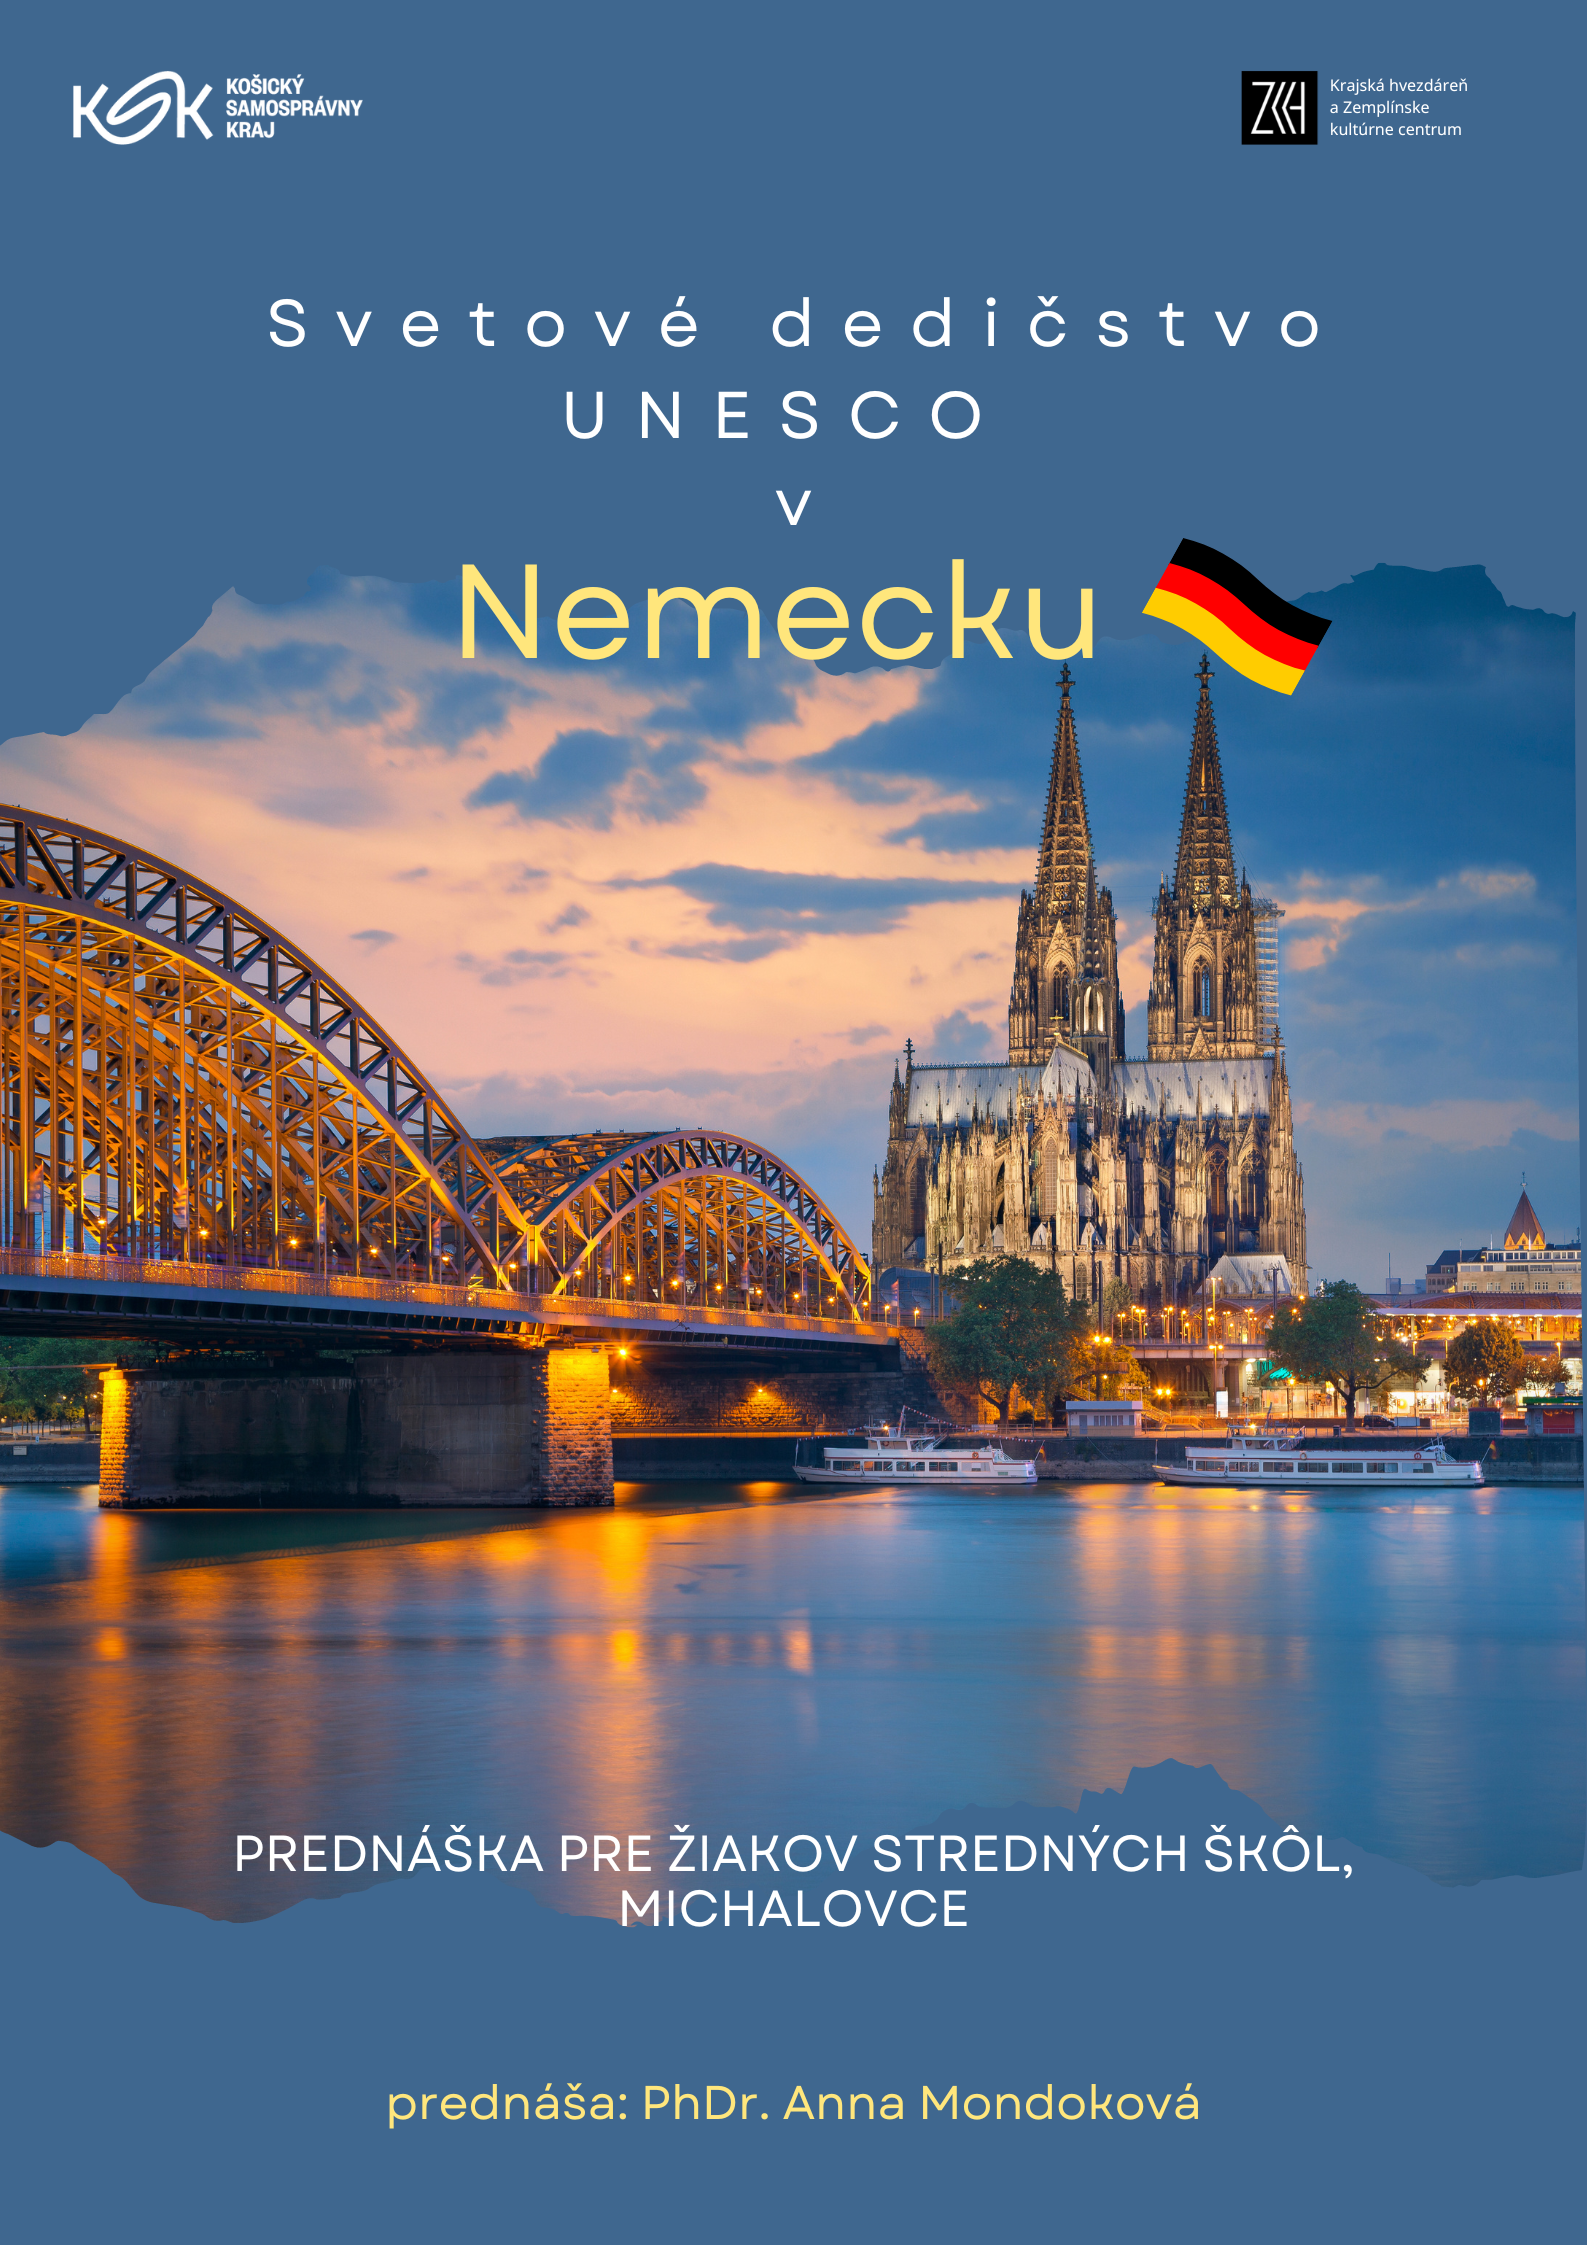 Svetové dedičstvo UNESCO-Nemecko